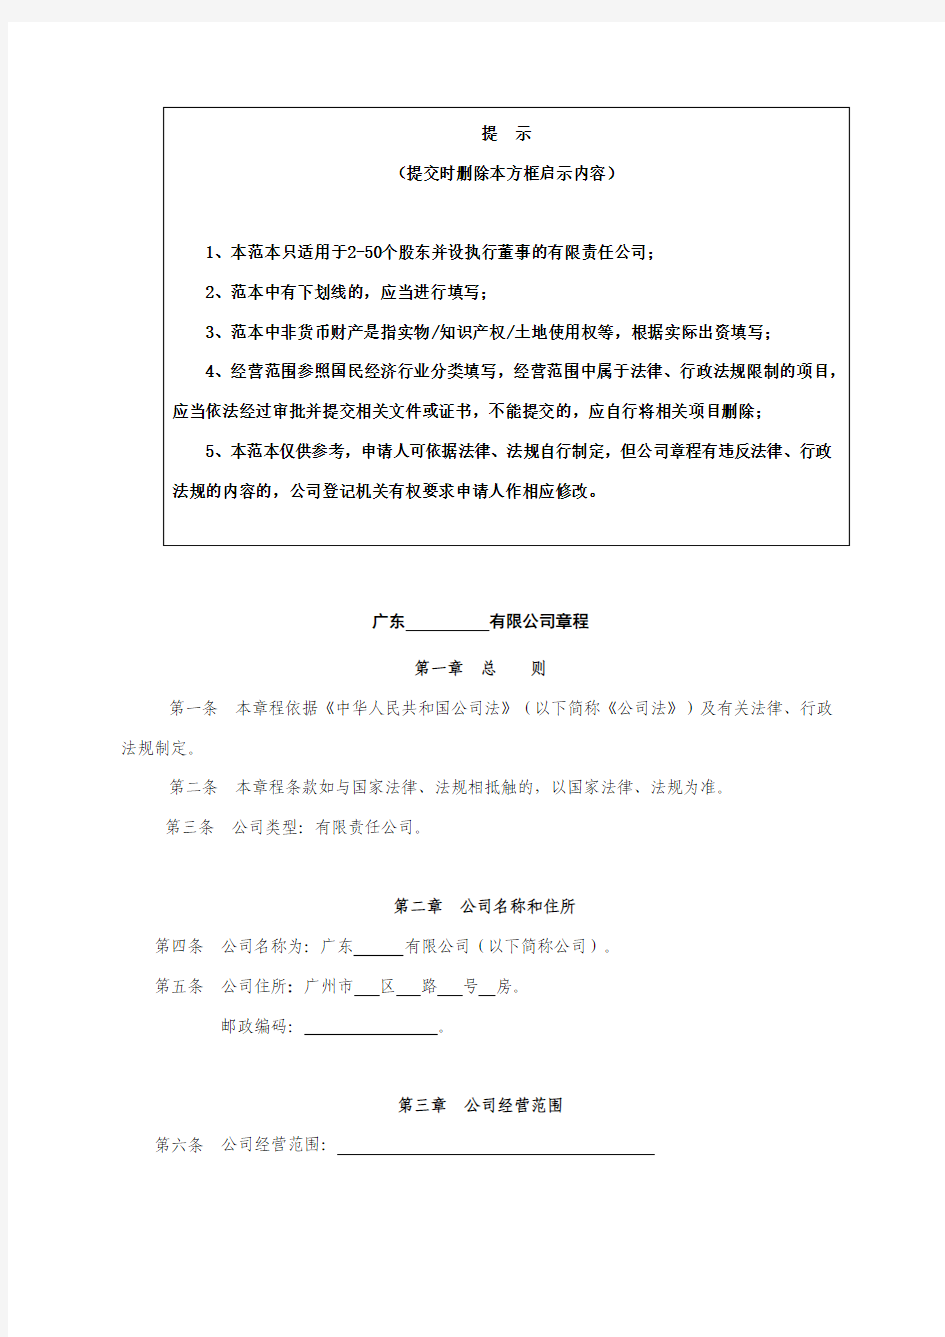 广东省工商局-章程参考范例(2-50人有限公司设执行董事)